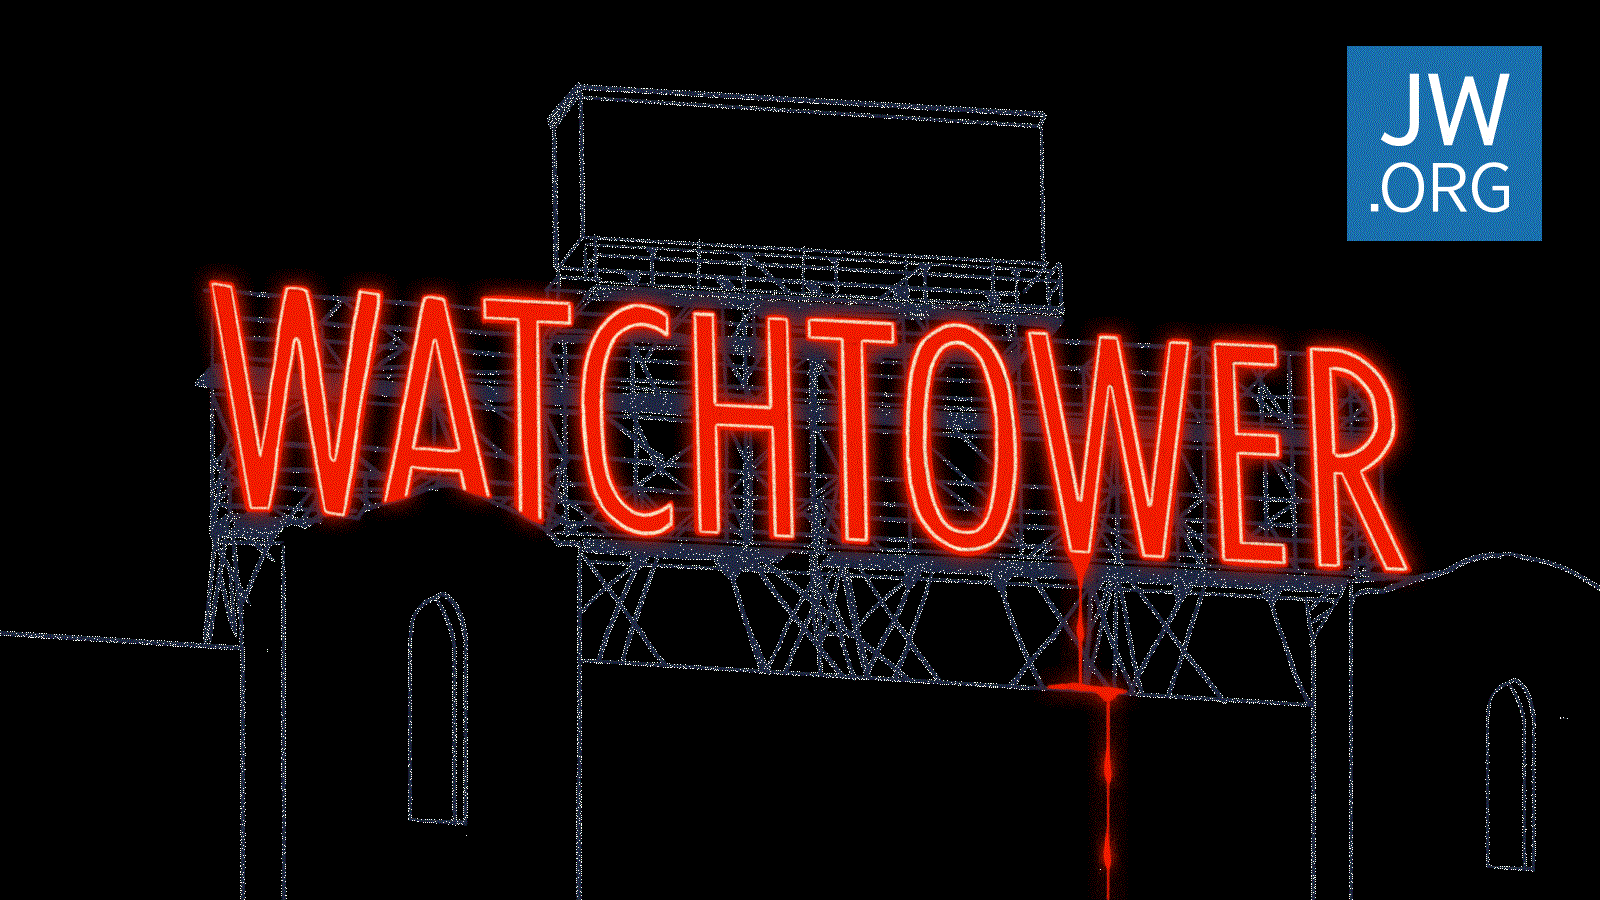 Kindesmissbrauch Der Fall des Wachtturms Detaillierte Dokumente über das interne Rechtsverfahren JW.ORG Verkauf Wahrheiten jetzt! Jehovas Zeugen - Geschworene verklagen die Wachtturm-Organisation aufgrund von Kindesmissbrauch zu 35 Millionen US-Dollar